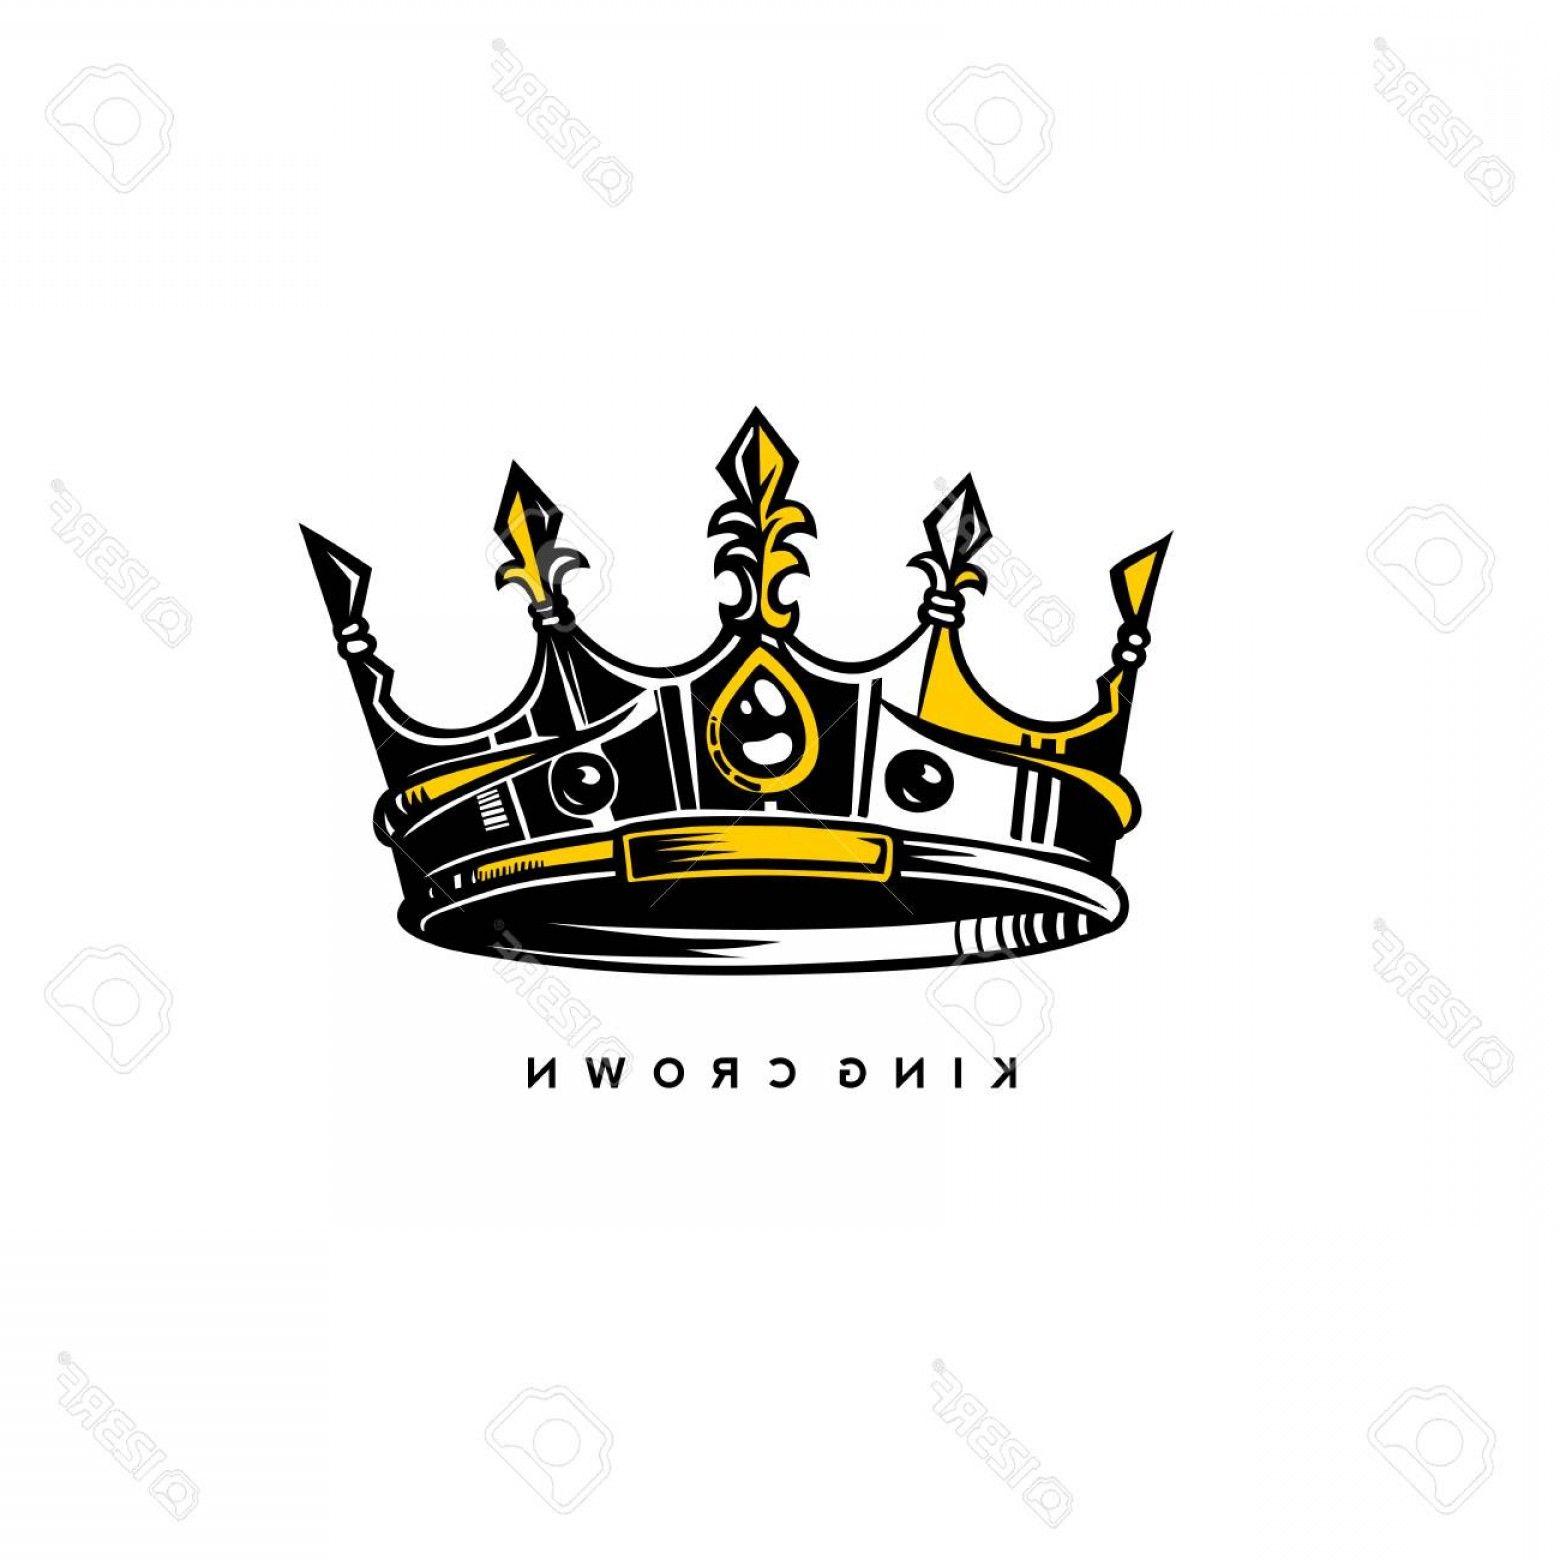 Gold King Crown Logo - Photostock Vector Silver And Gold King Crown Logo On White ...